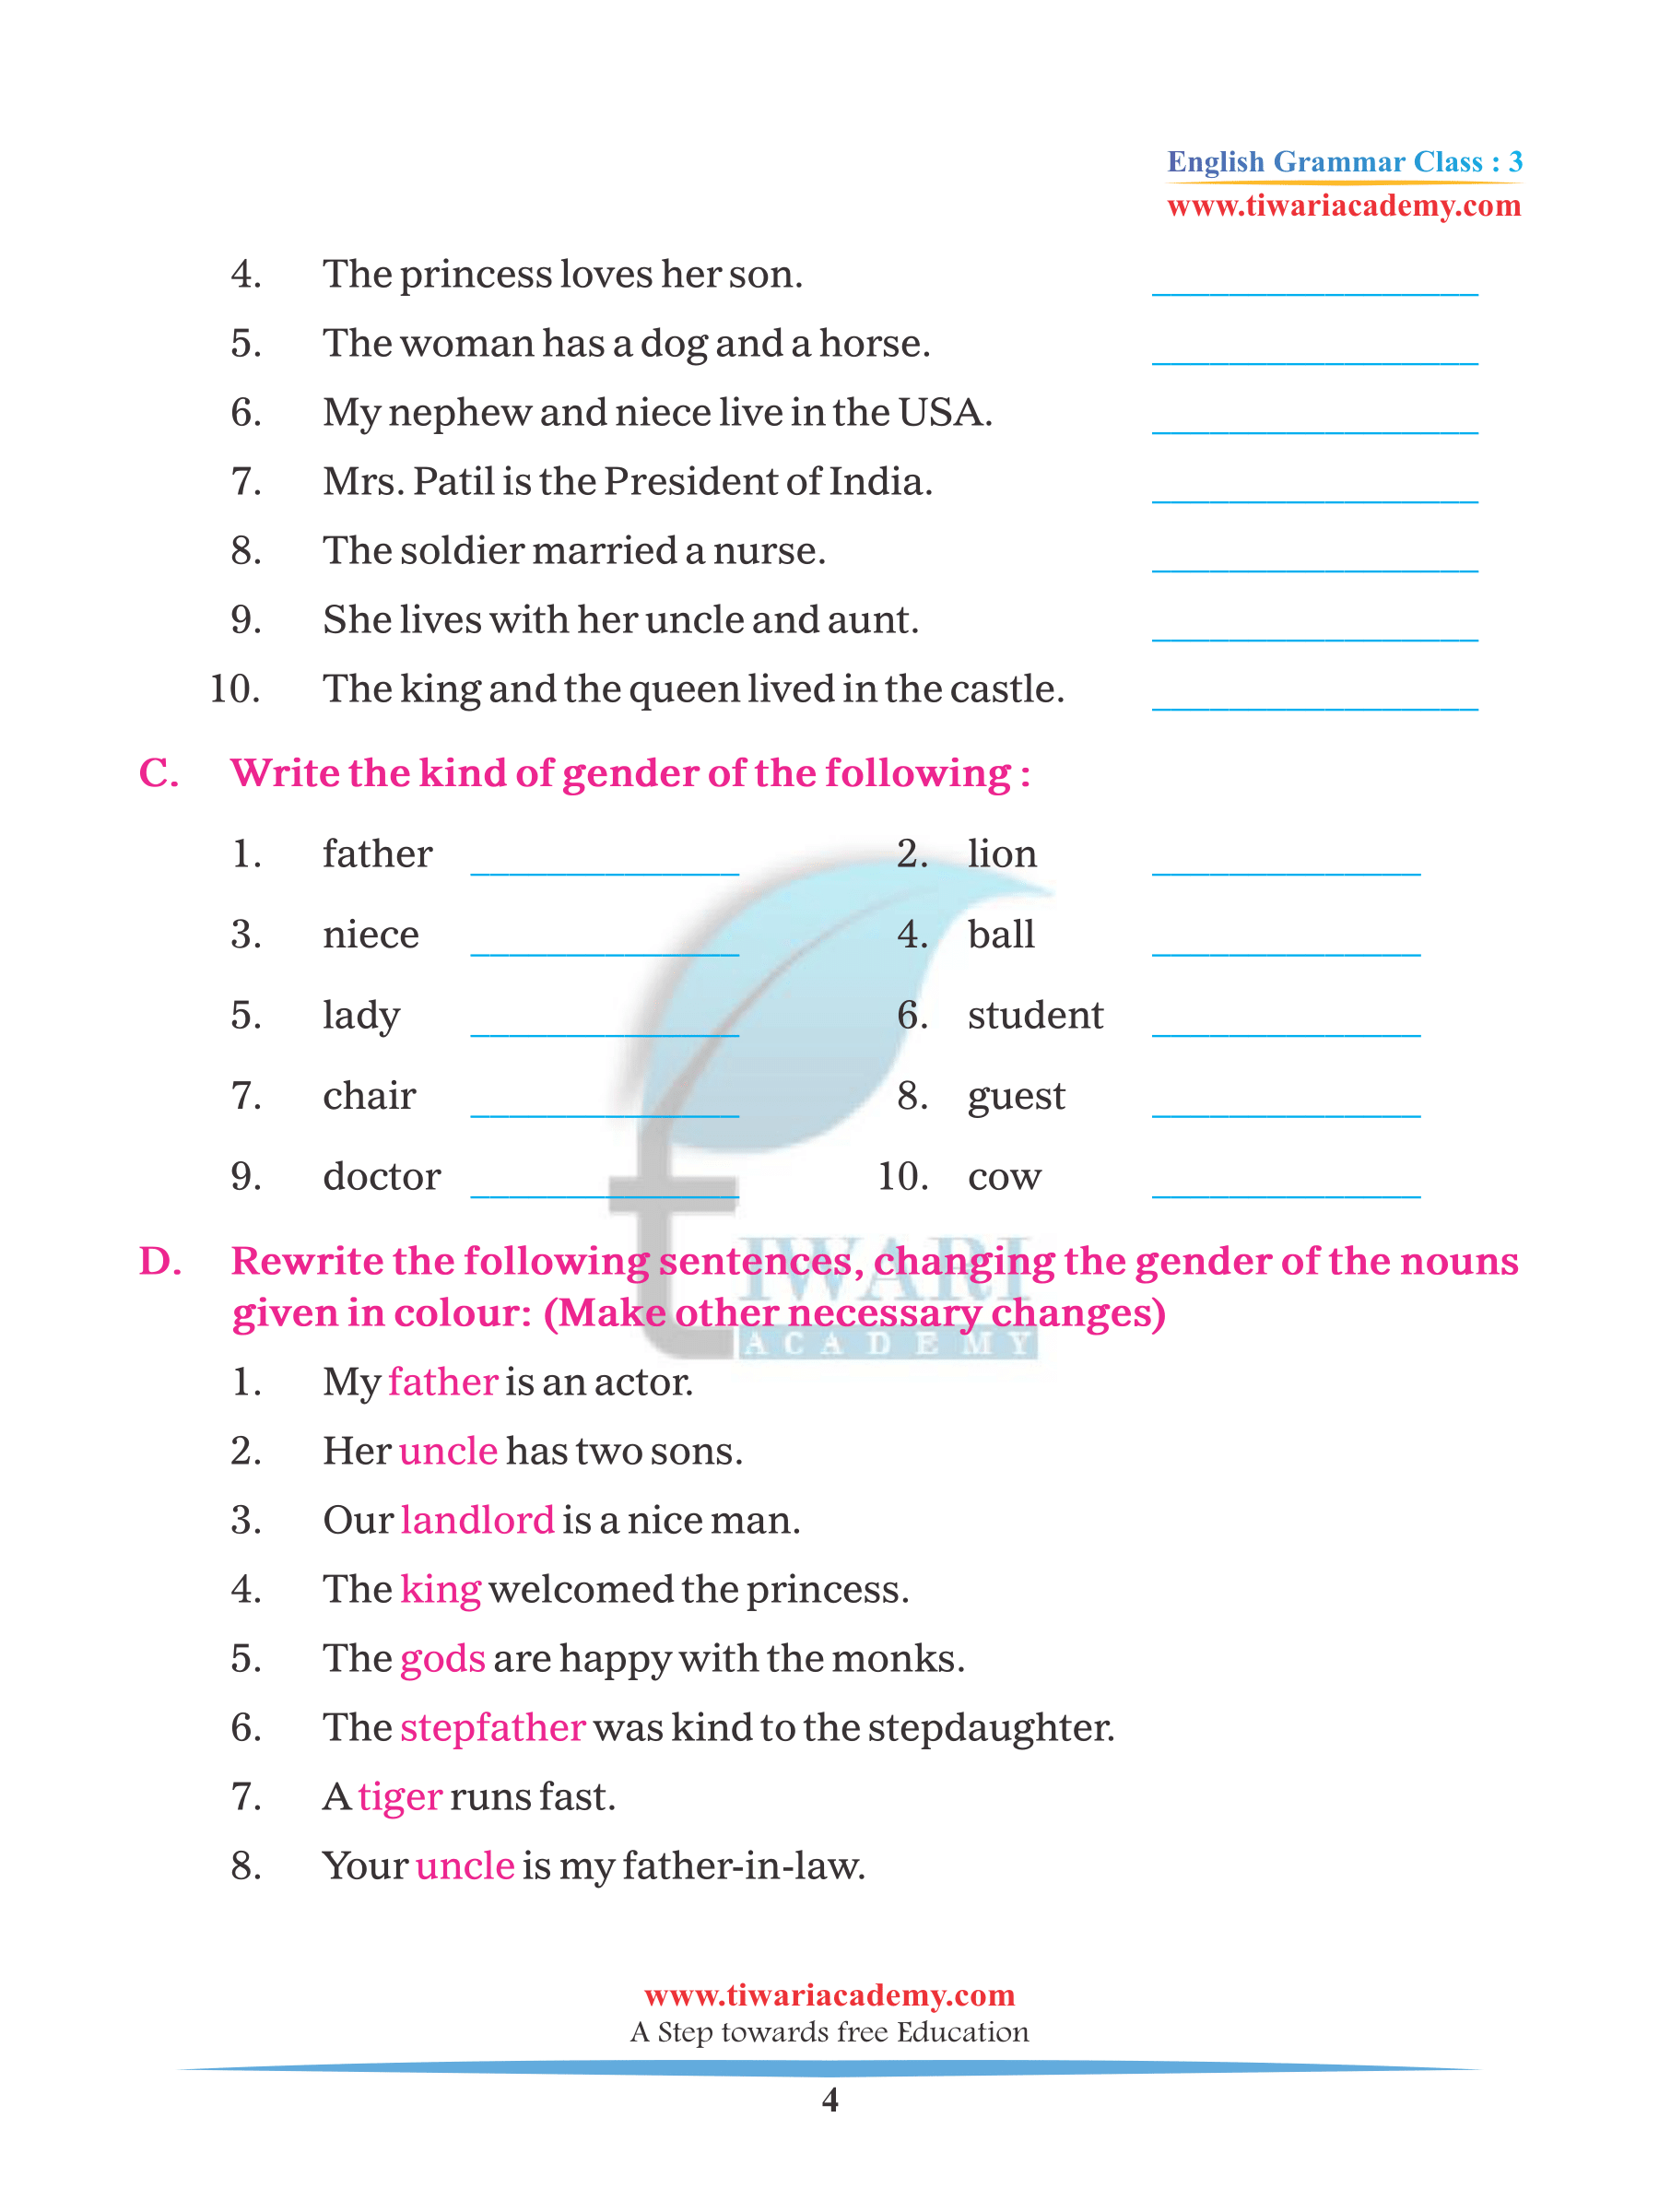 gender-of-nouns-worksheet-gender-nouns-worksheet